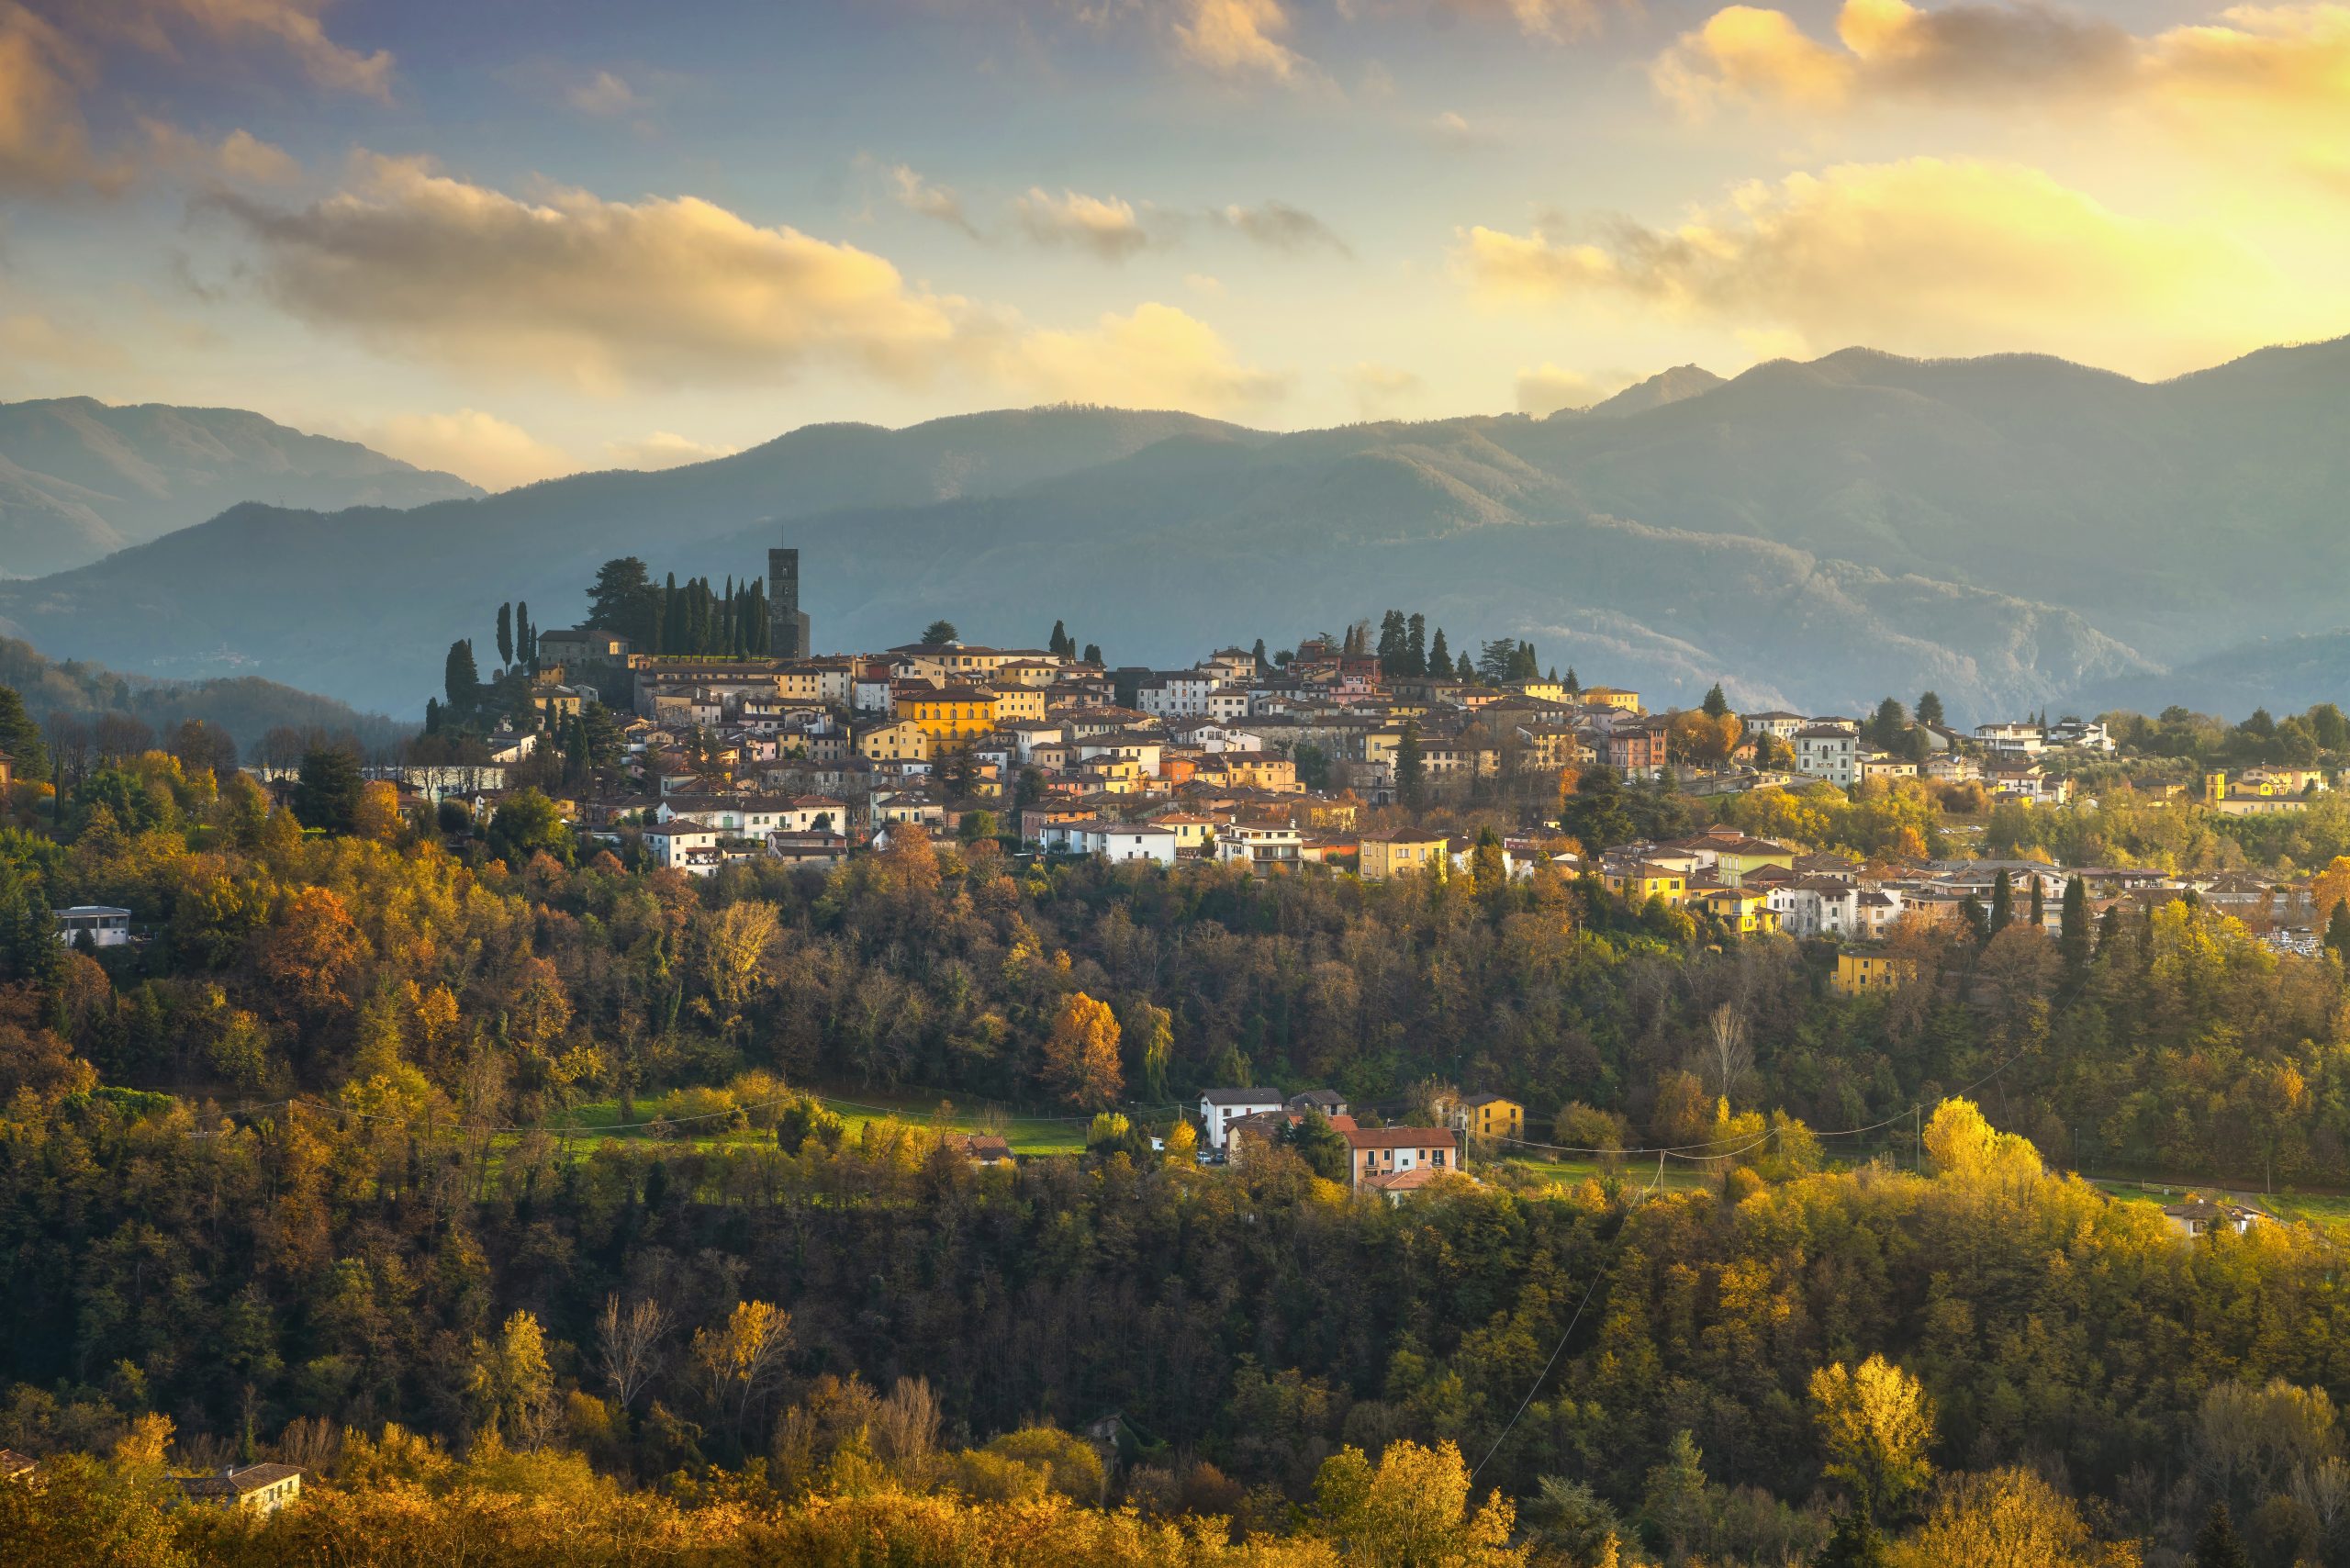 Barga, Italy © Stevanzz Dreamstime.com